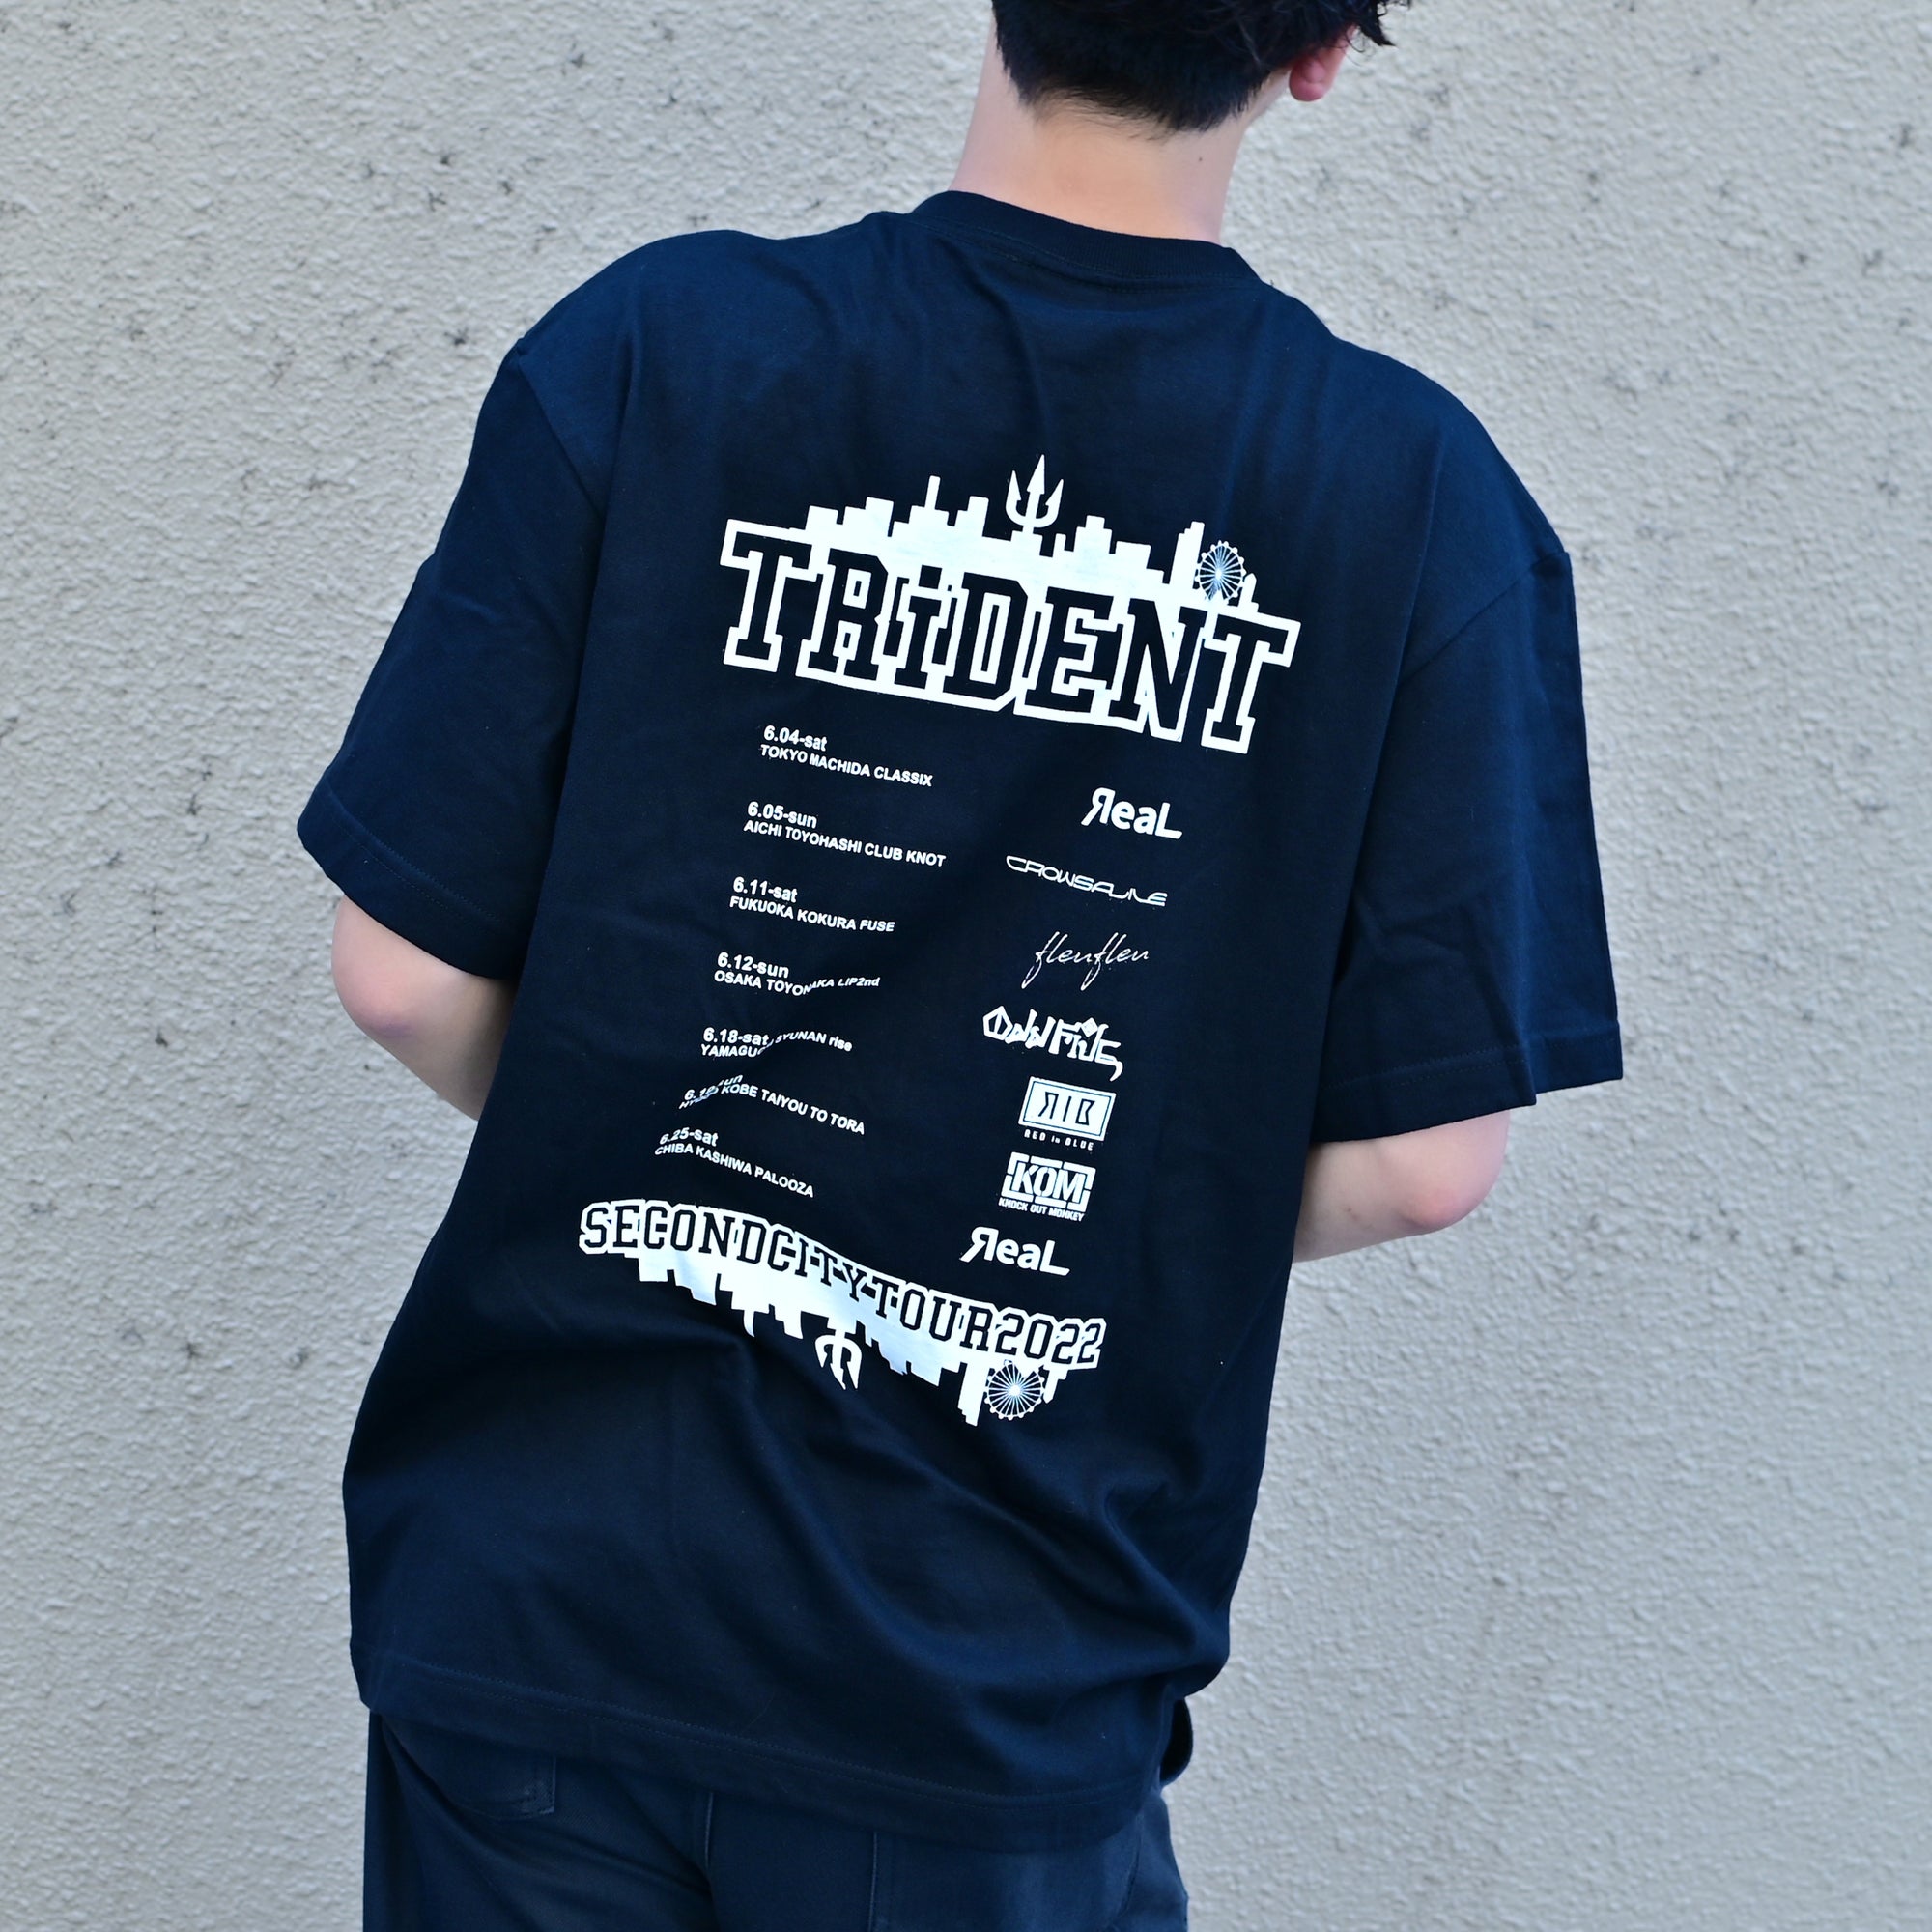 SECOND CITY Tour T-shirt